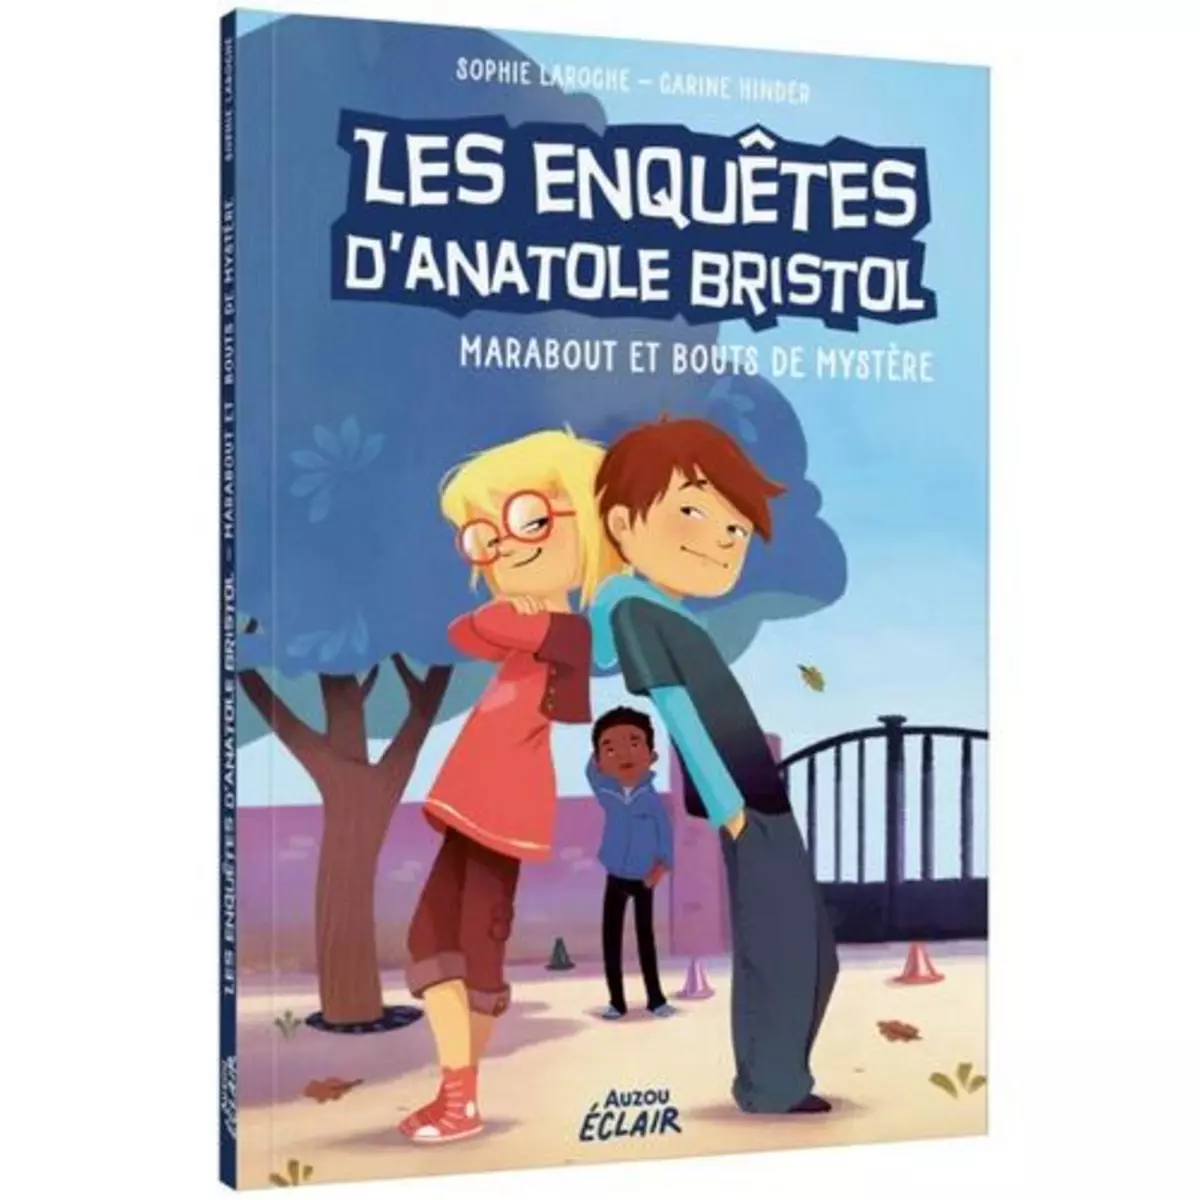  LES ENQUETES D'ANATOLE BRISTOL TOME 4 : MARABOUT ET BOUTS DE MYSTERE, Laroche Sophie